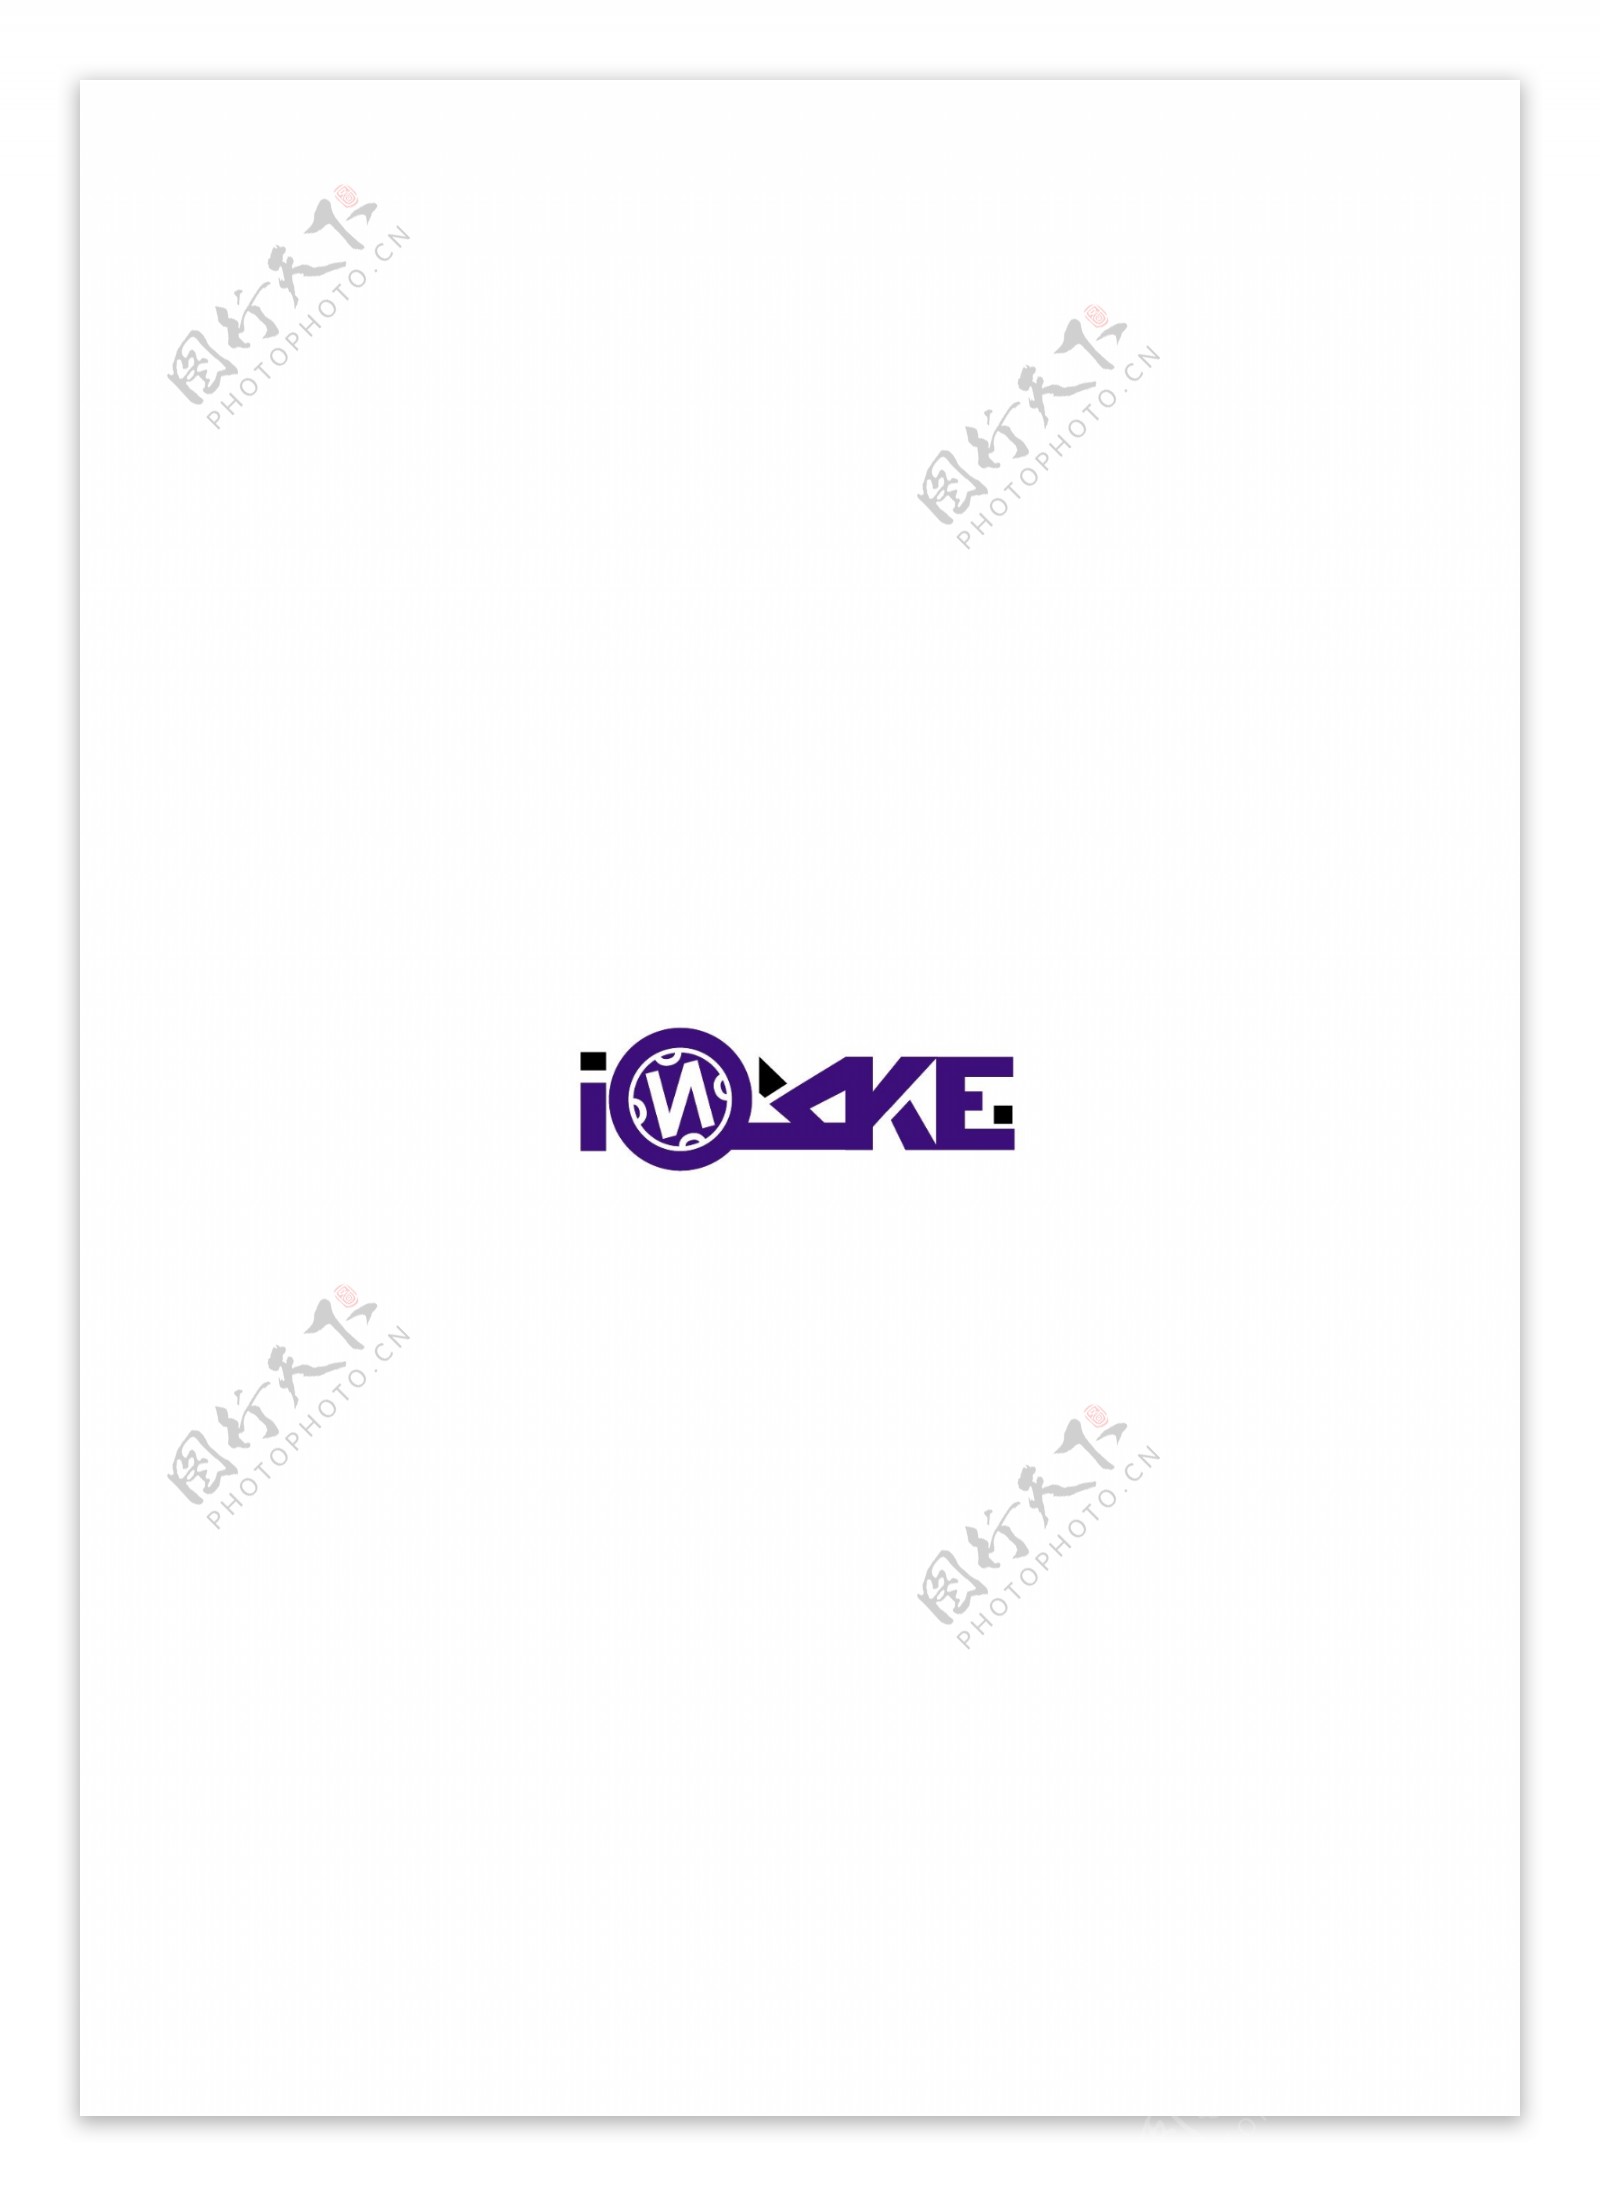 DJIOKKElogo设计欣赏DJIOKKE摇滚乐队标志下载标志设计欣赏